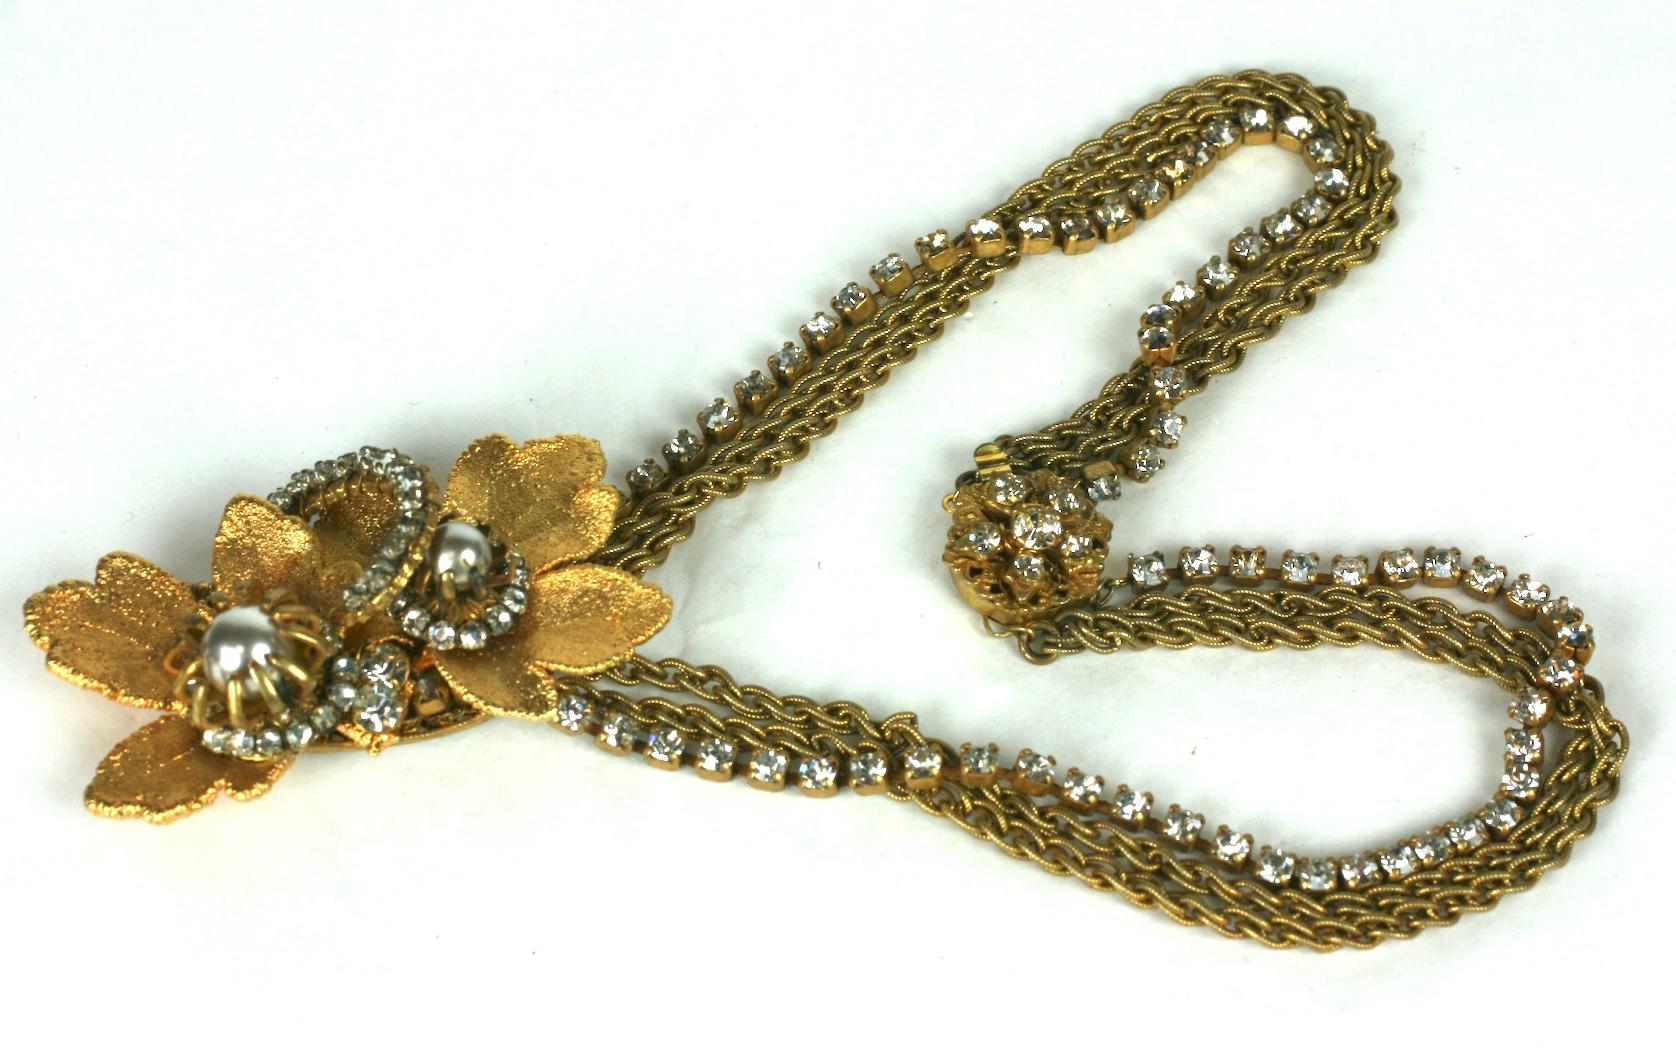 Collier à pendentifs Miriam Haskell Gilt Leaf composé de cristaux montés en rose cousus à la main sur des feuilles électroplaquées et de fausses perles. Le chaînage est composé de deux chaînes dorées et d'une chaîne en strass.
Fermoir en filigrane